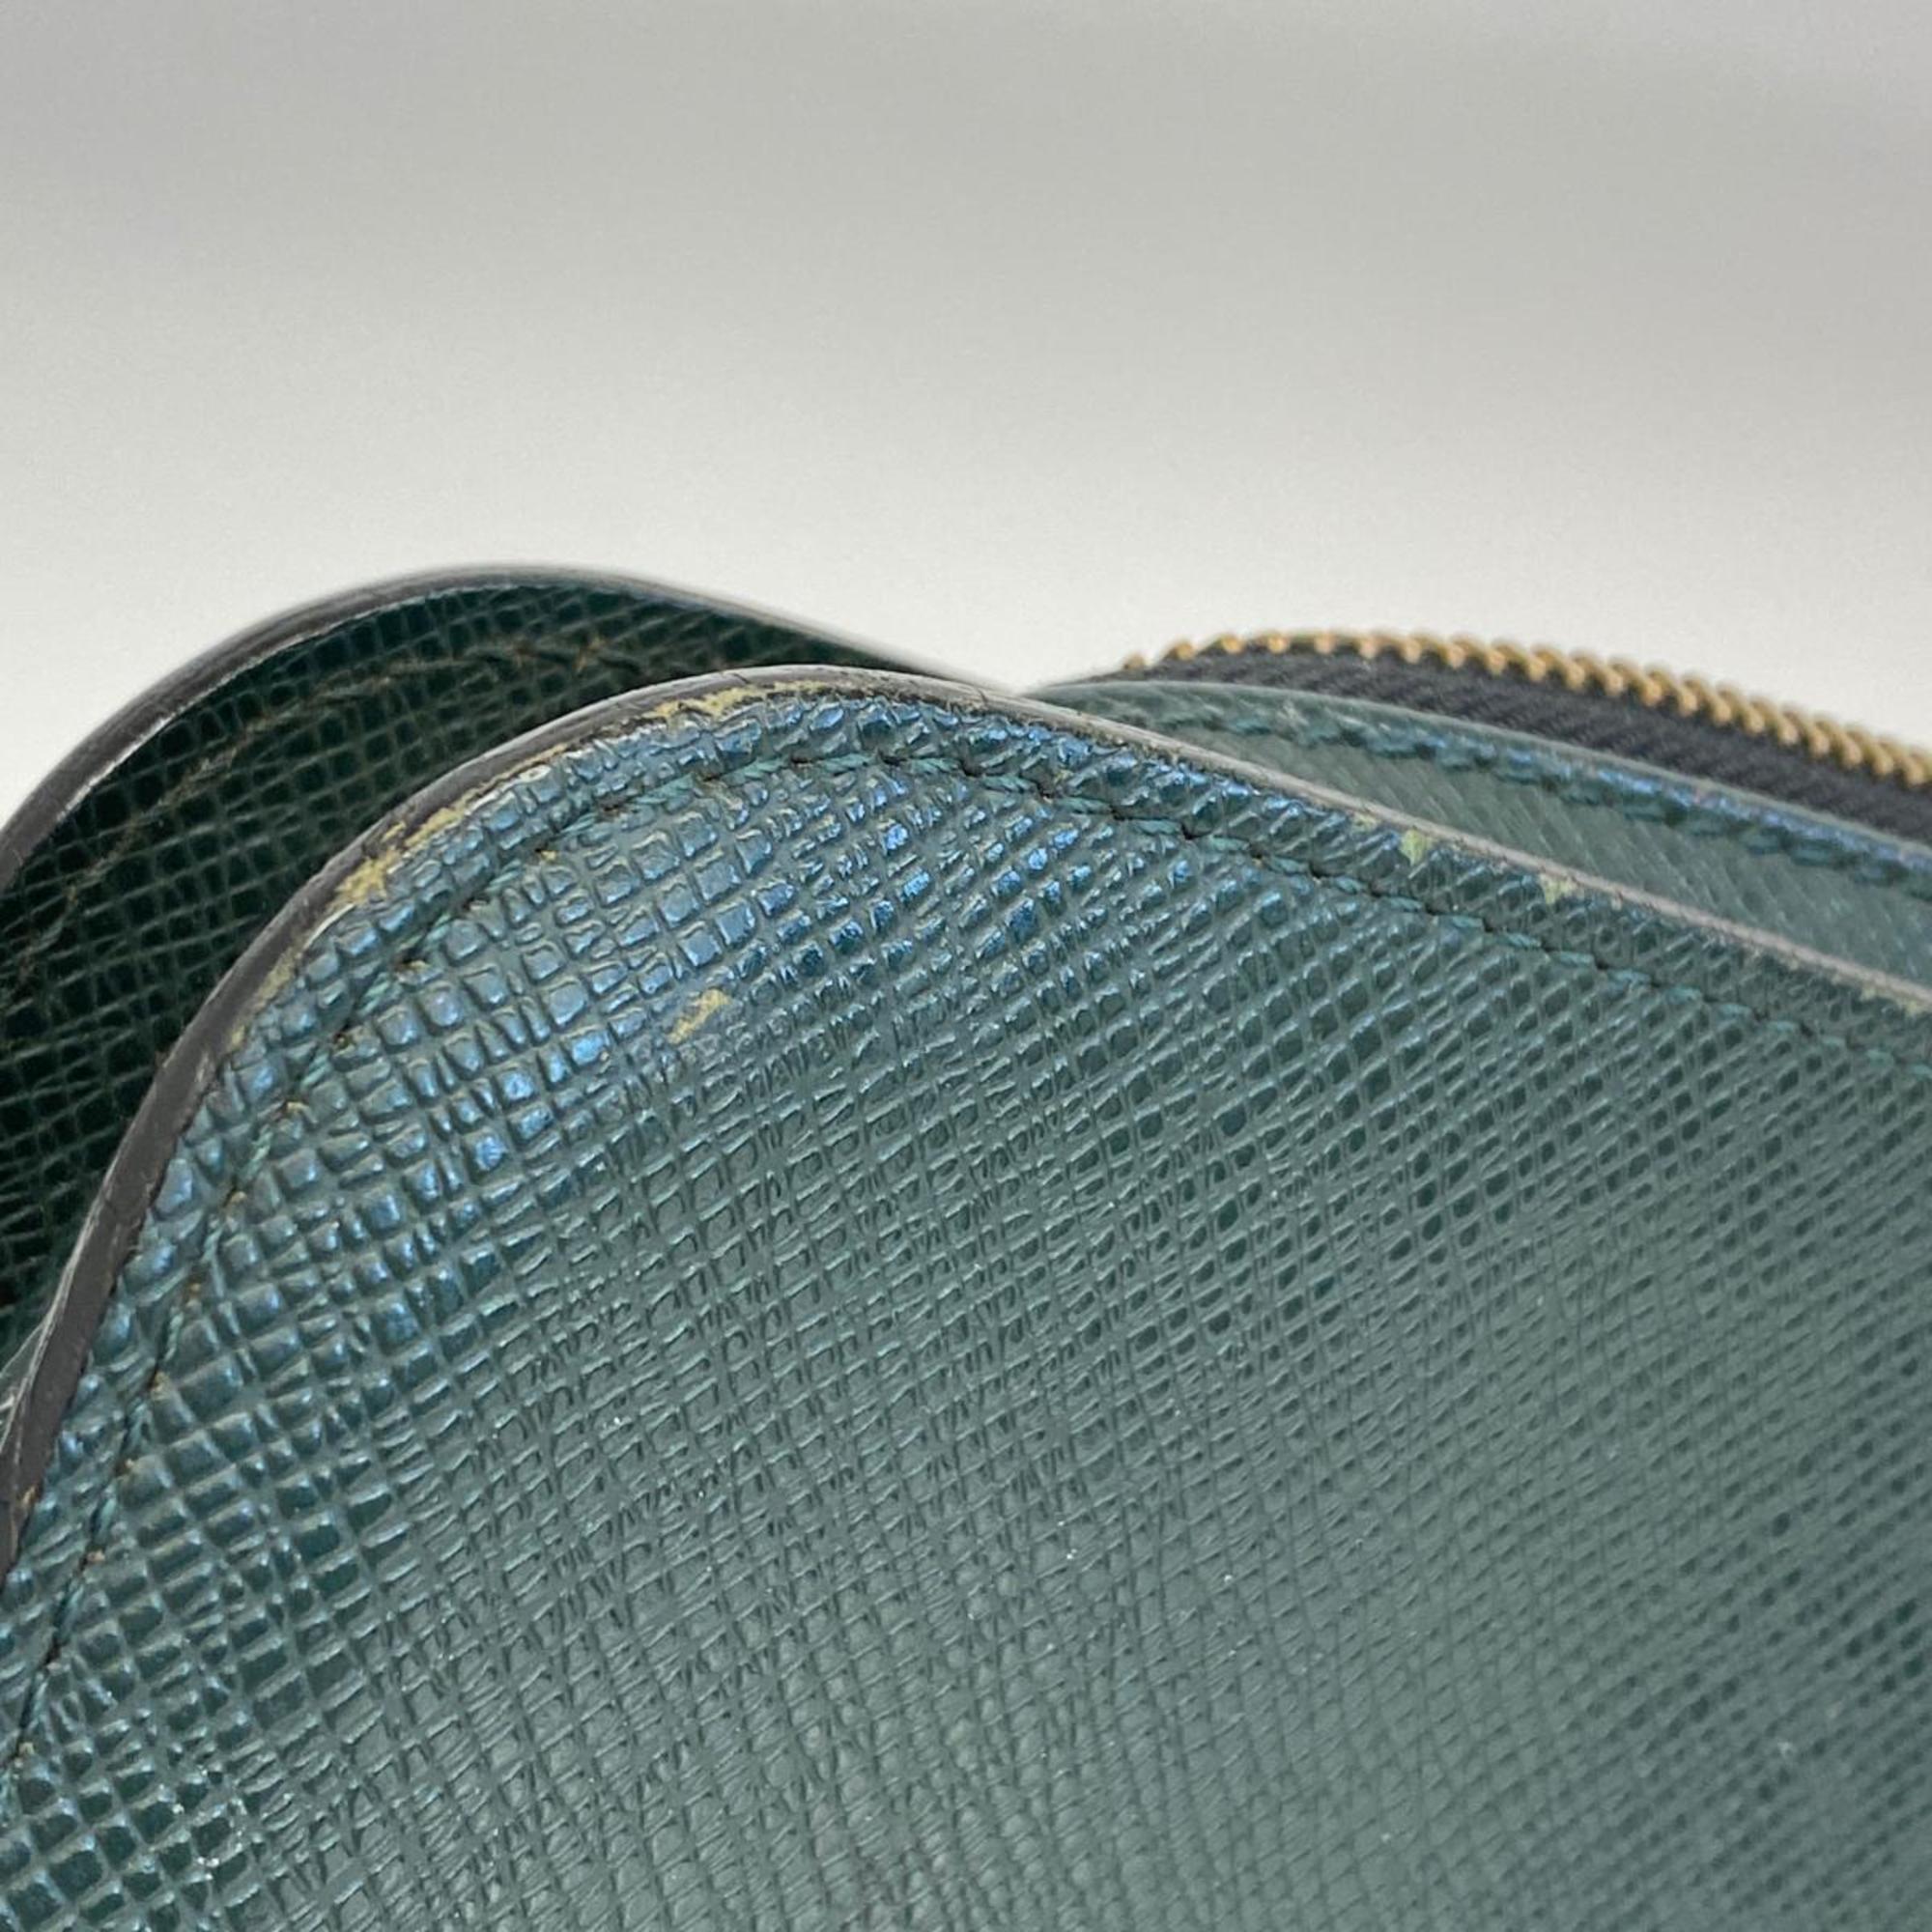 ルイ・ヴィトン(Louis Vuitton) ルイ・ヴィトン クラッチバッグ タイガ バイカル M30184 エピセアメンズ